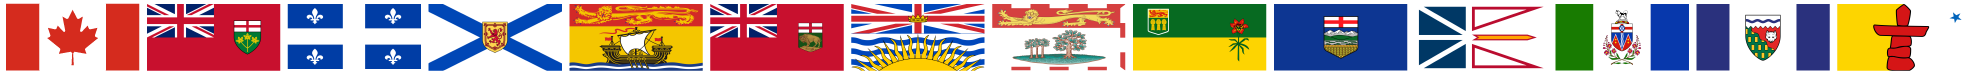 Drapeaux provinciaux et territoriaux du Canada, affichés sous forme de bande horizontale.